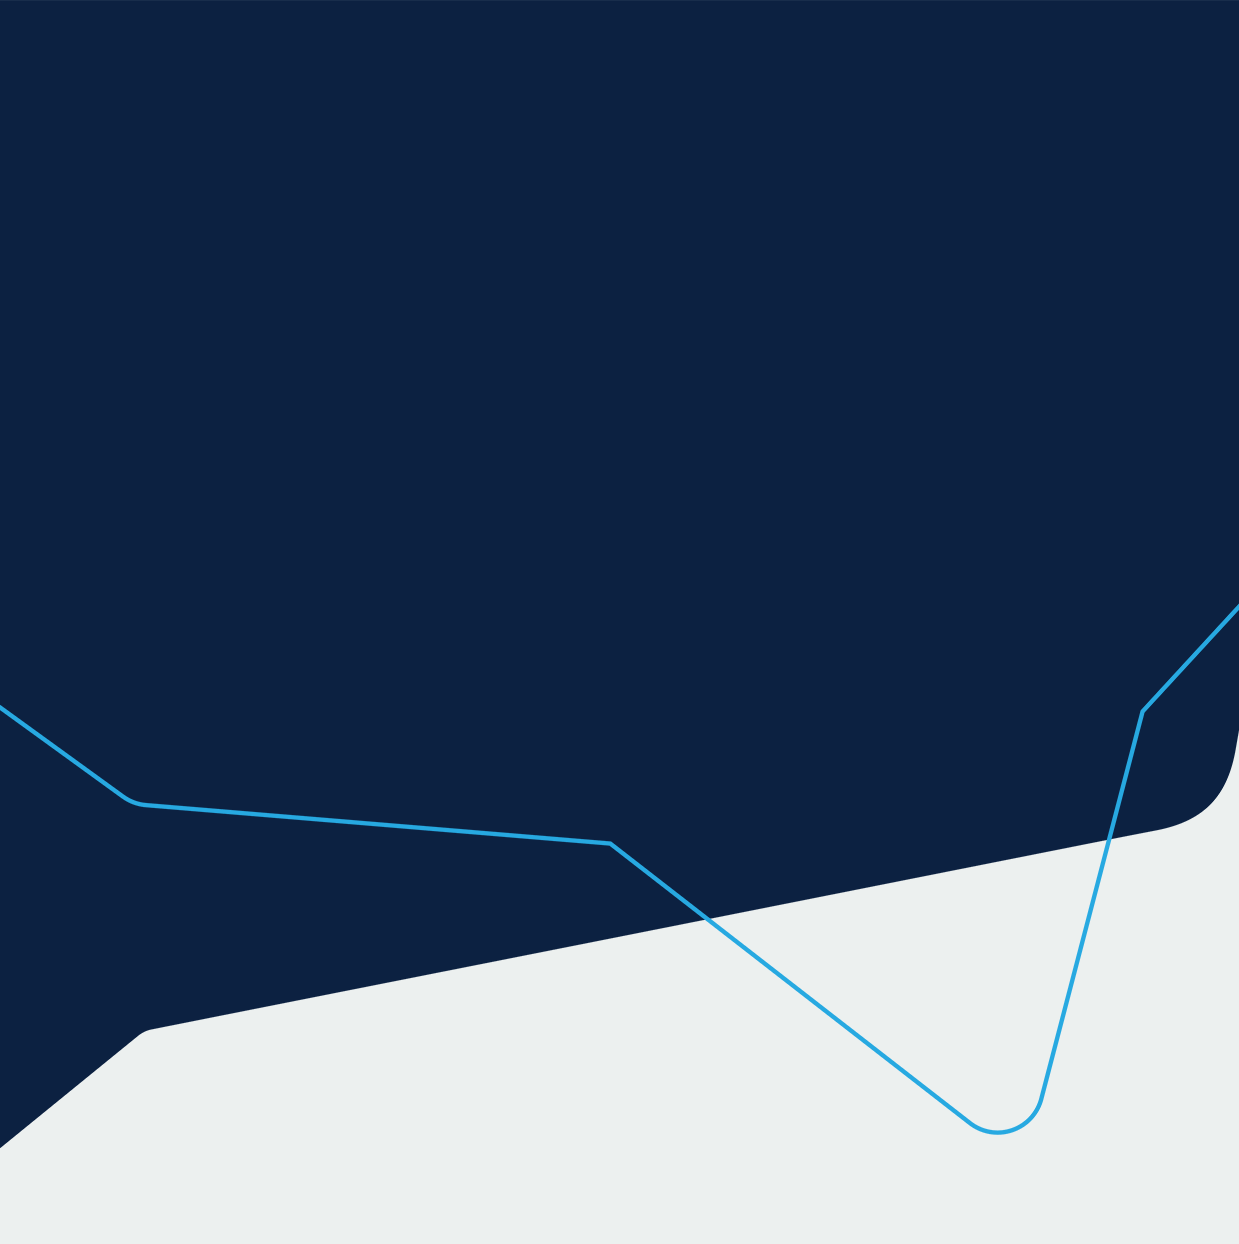 Ilustração de background com forma na cor azul-escuro e linha curvada azul-claro